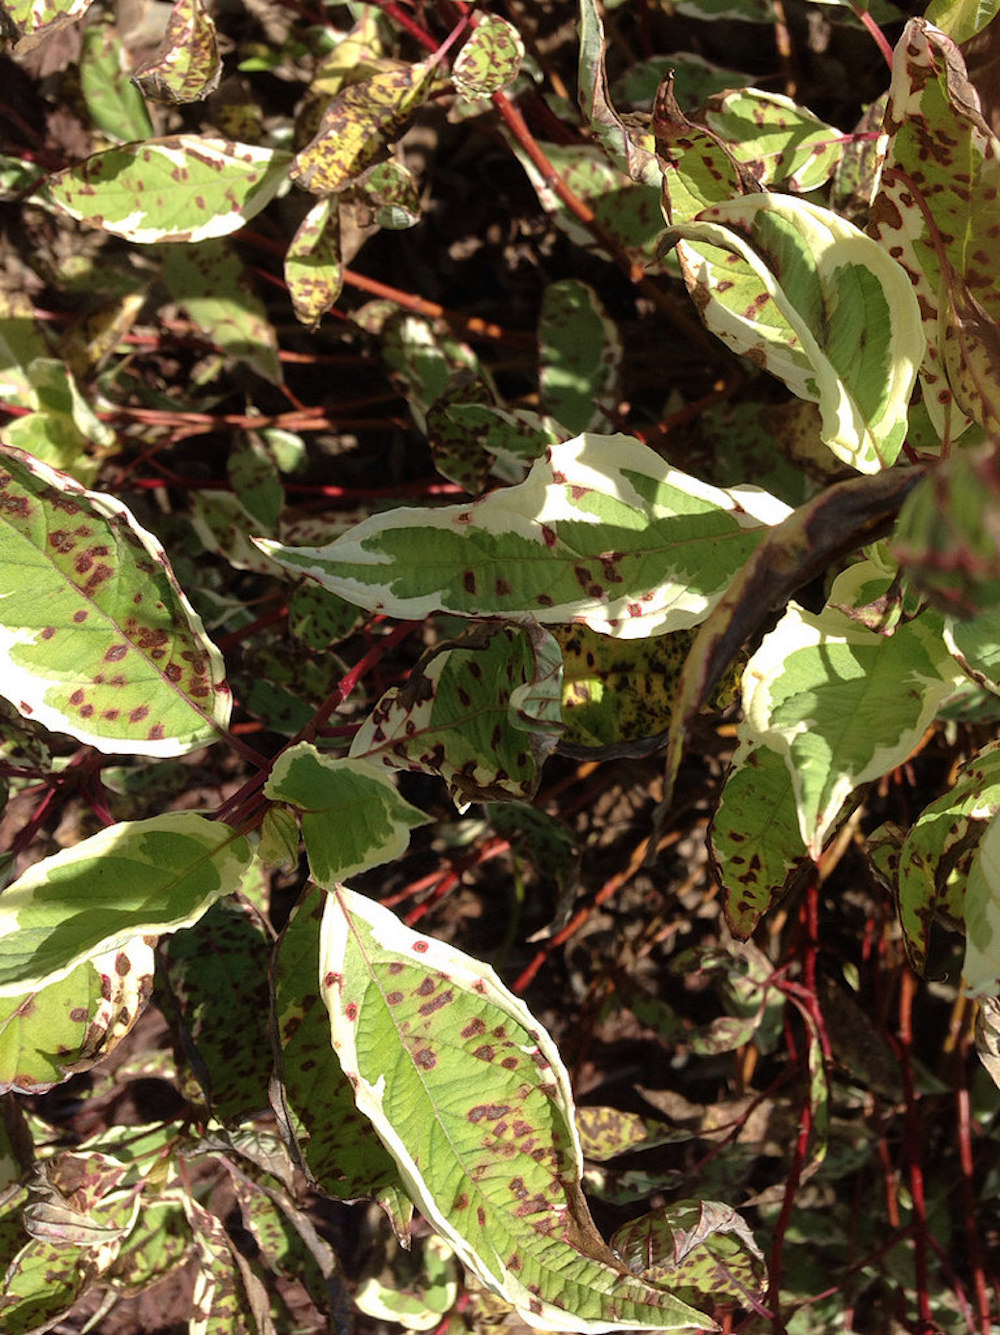 Septoria Leaf Spot on garden plants